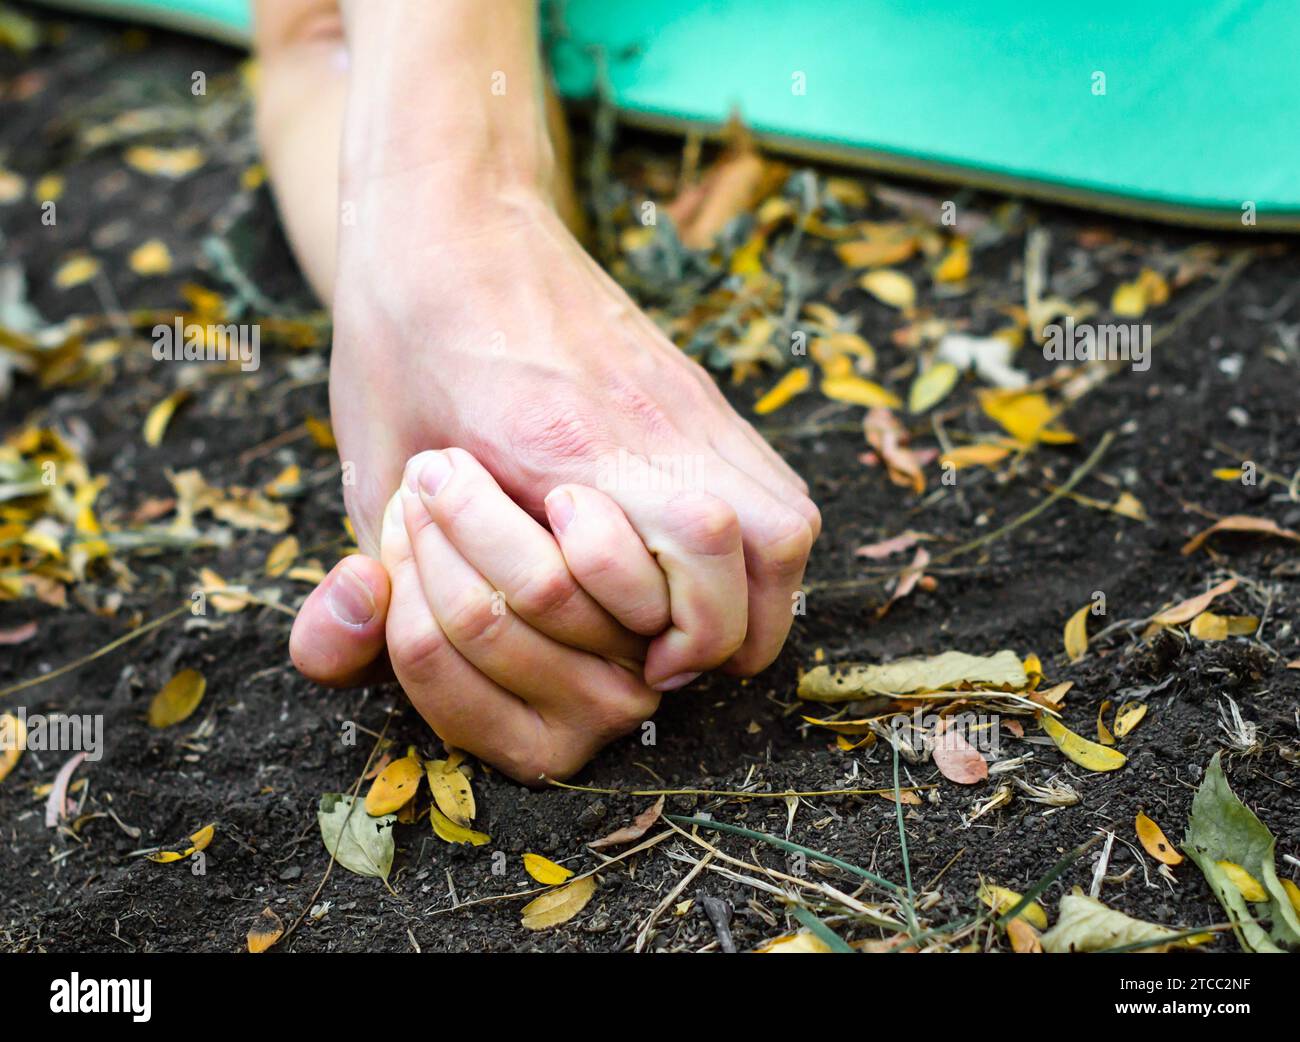 Hände von Menschen, die sich gegenseitig auf dem Boden halten, umgeben von Blättern Stockfoto